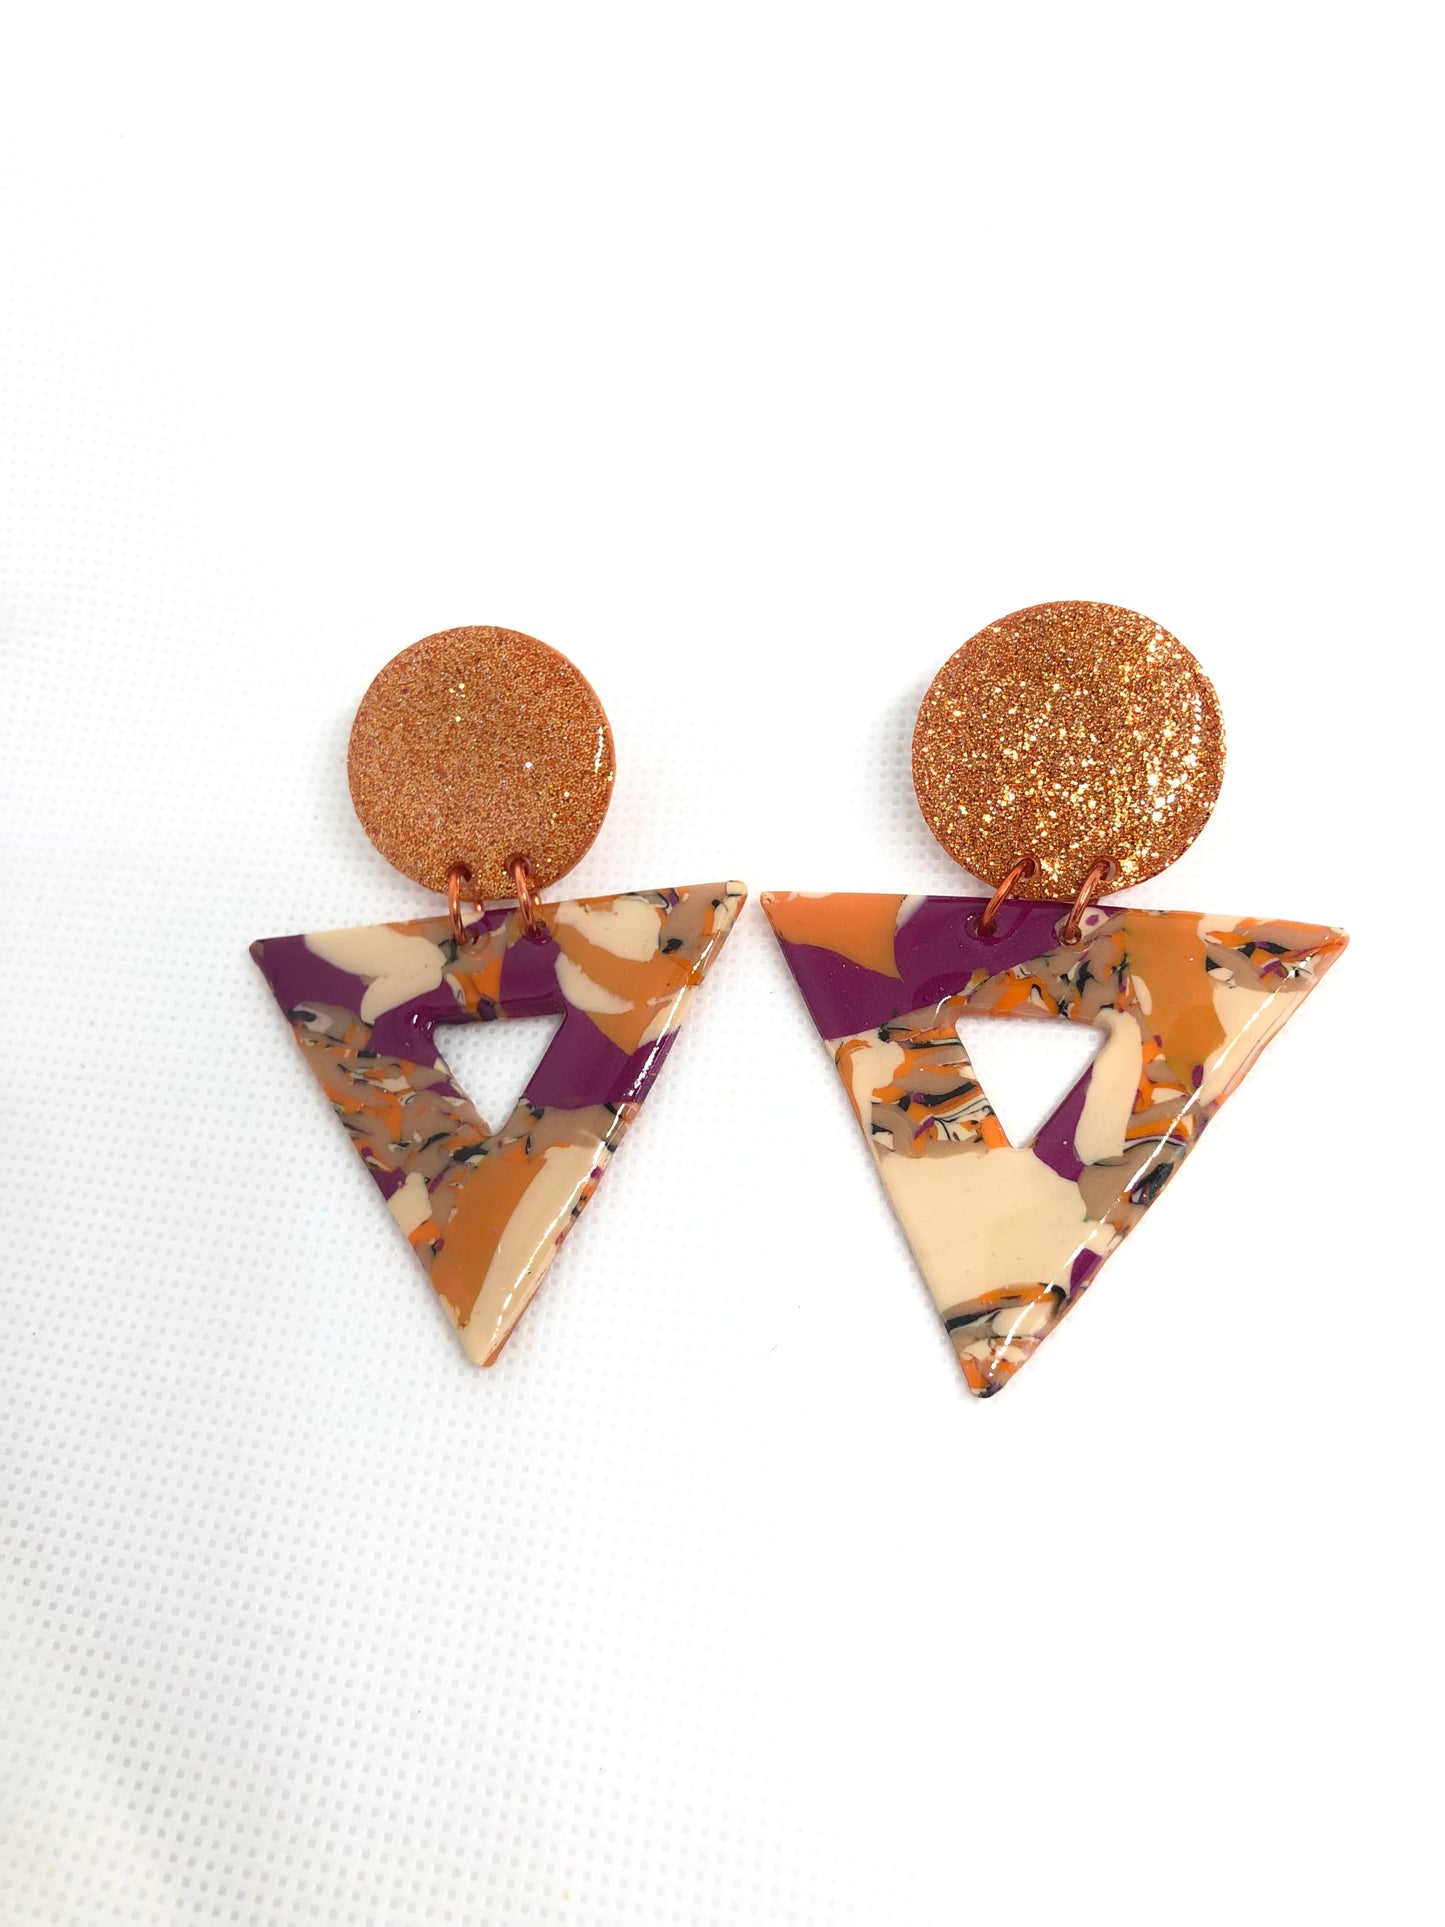 Glitter Queen Triangular Orange and Purple Studs #1 - lightweight